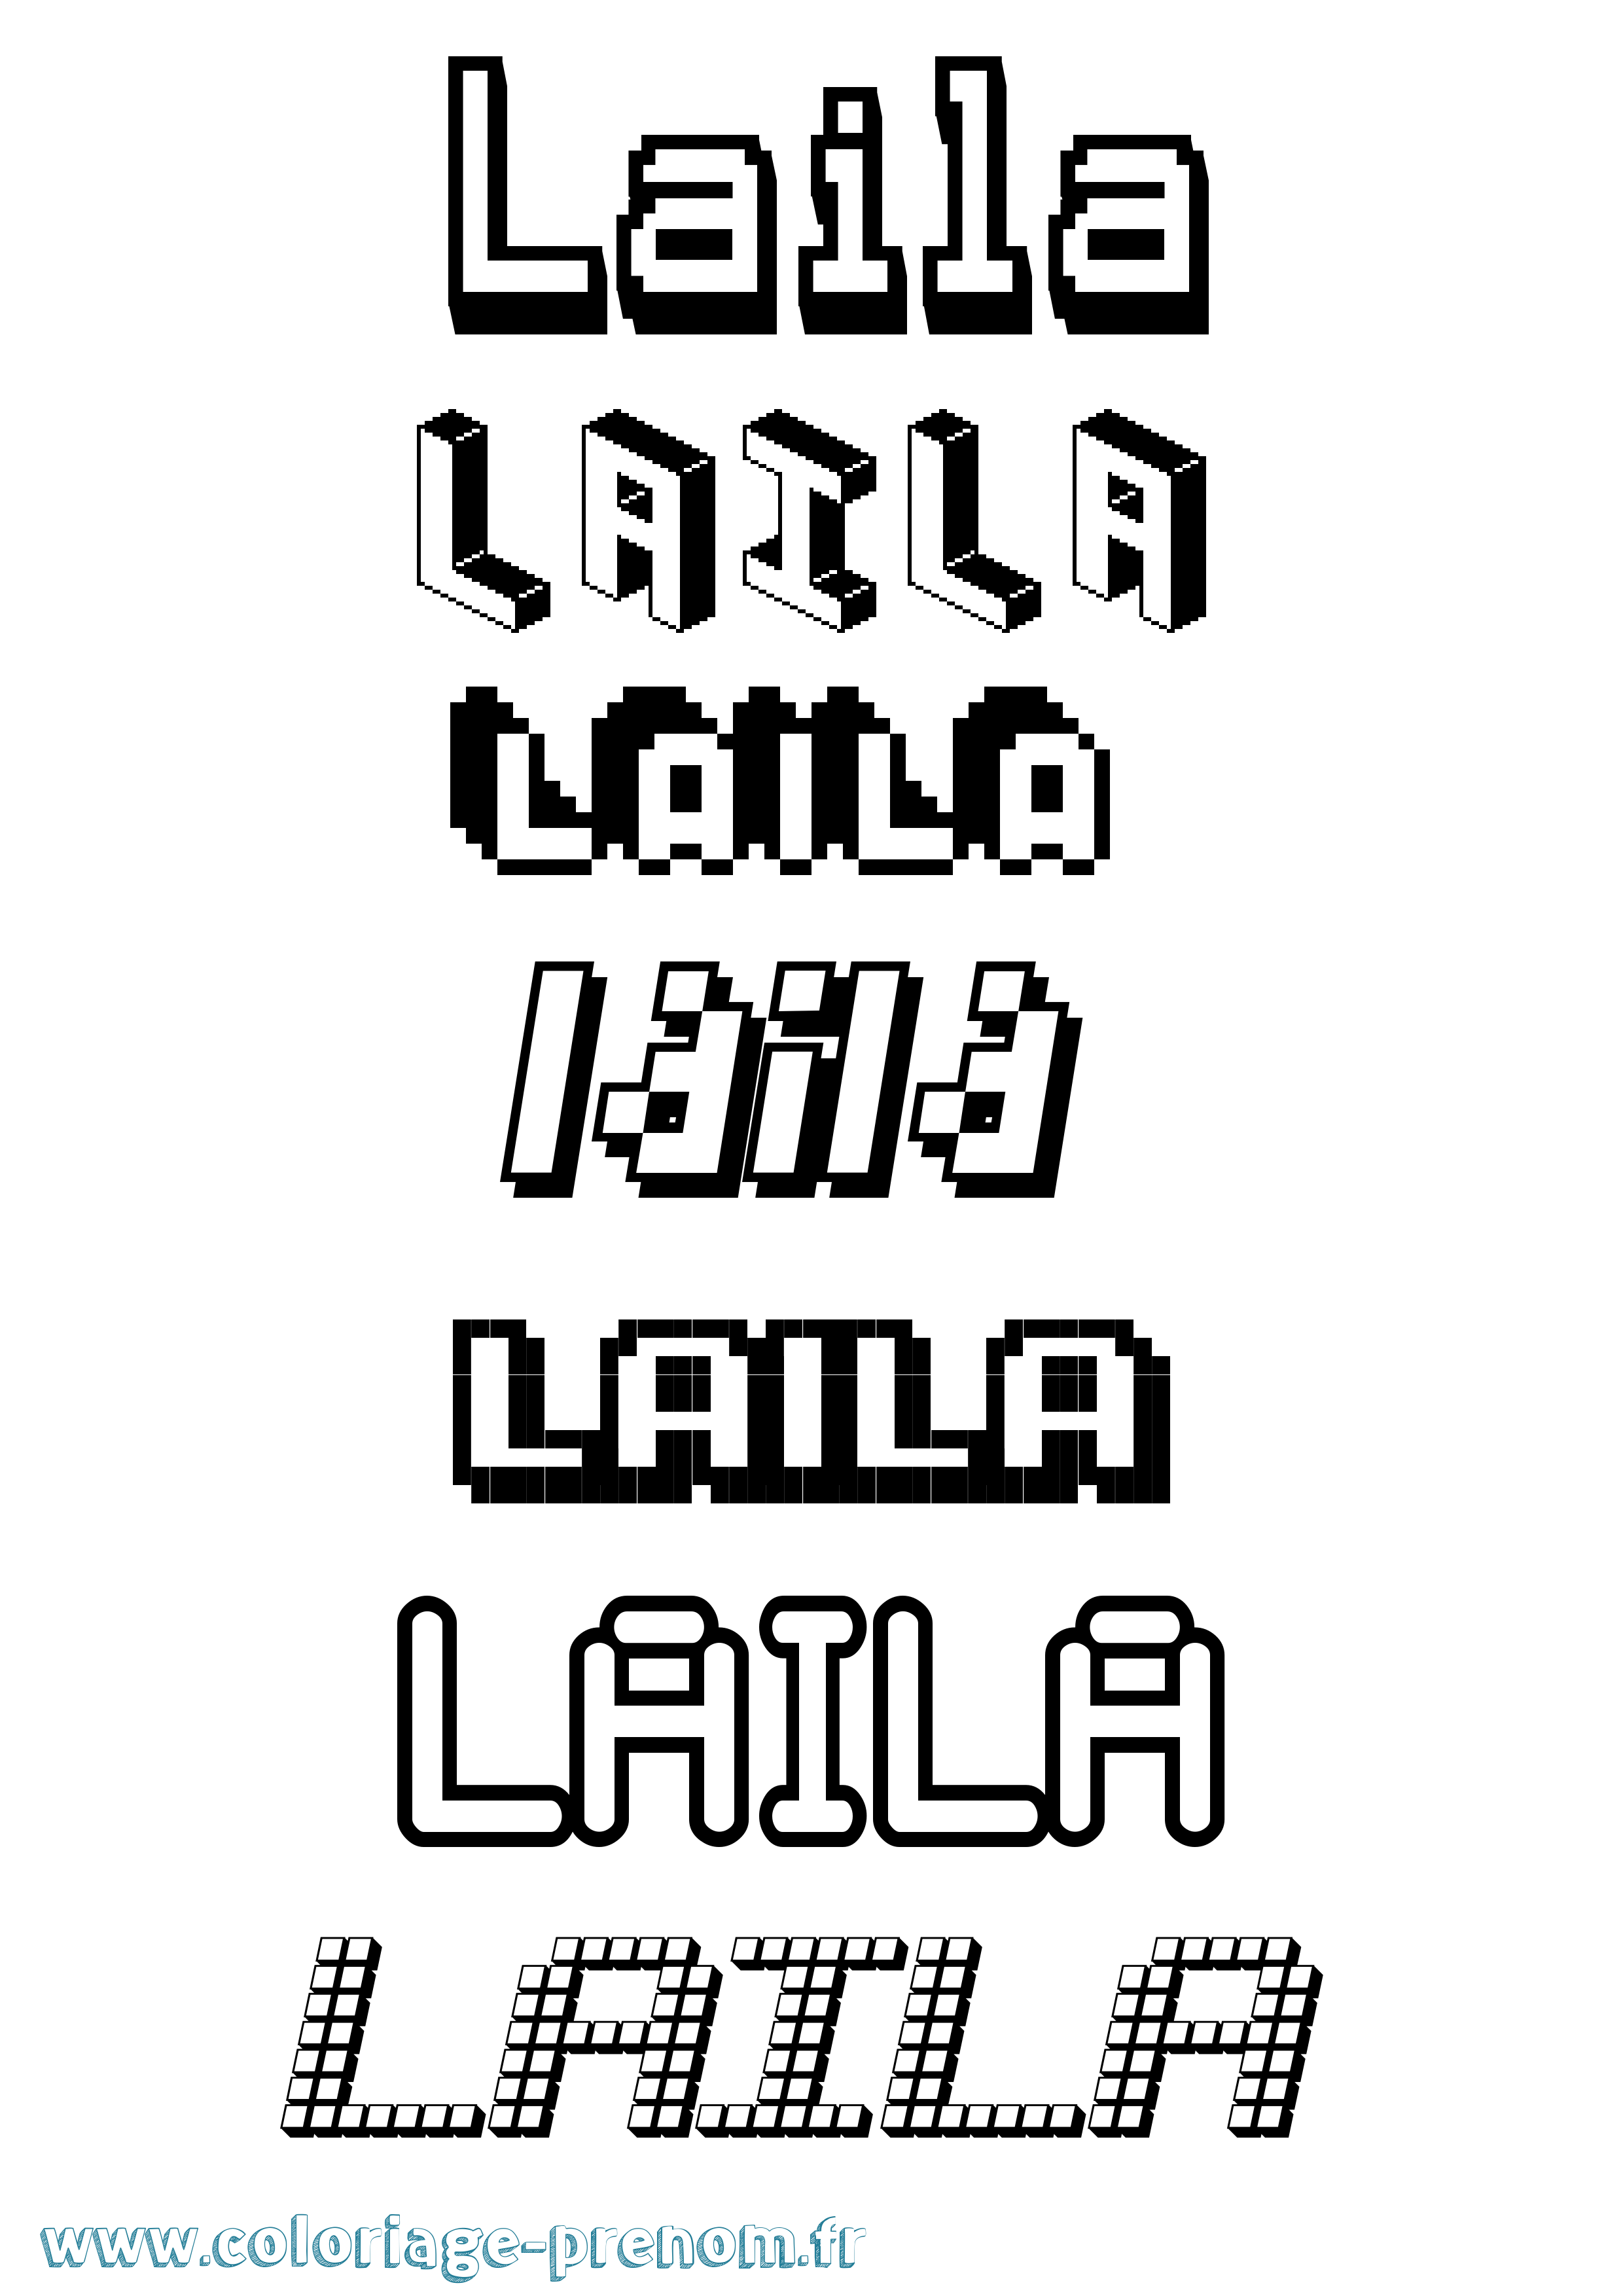 Coloriage prénom Laila Pixel